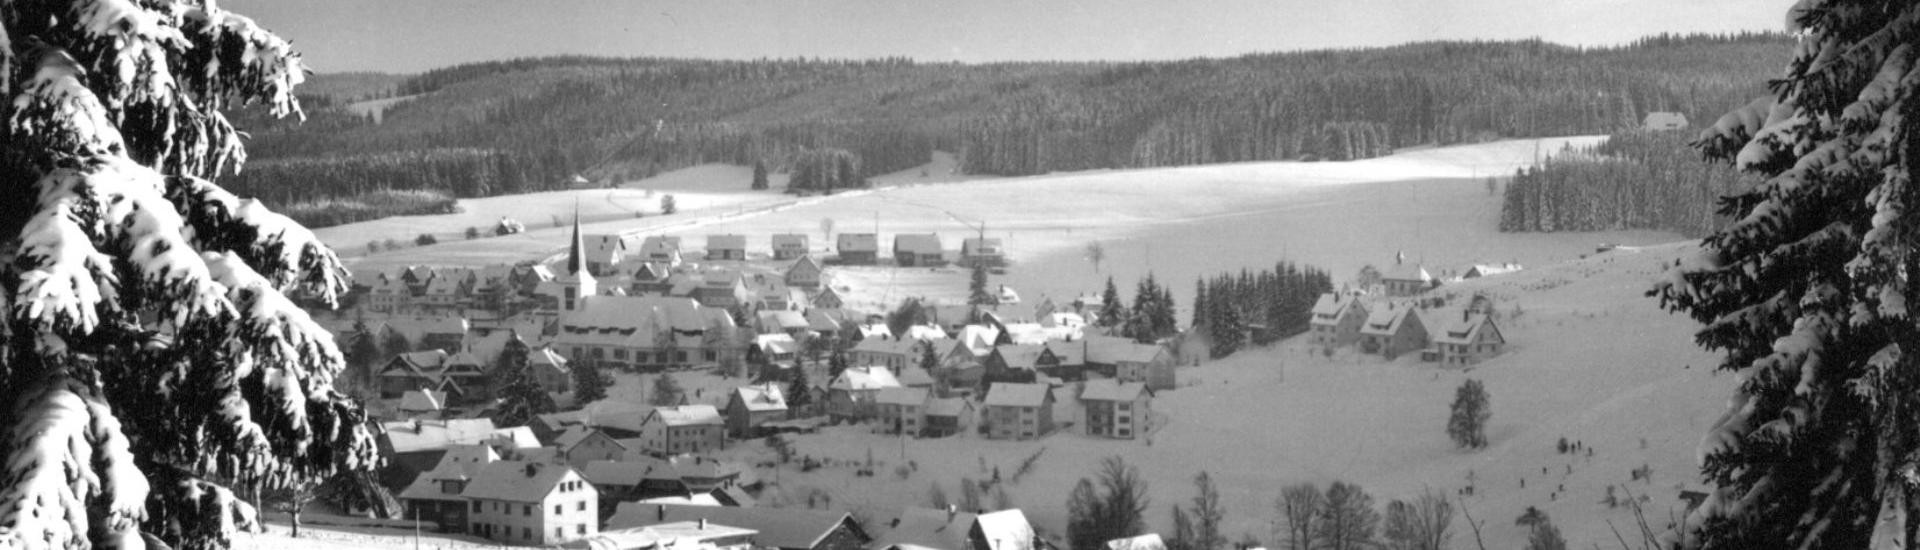 Winterbild vom Dorf